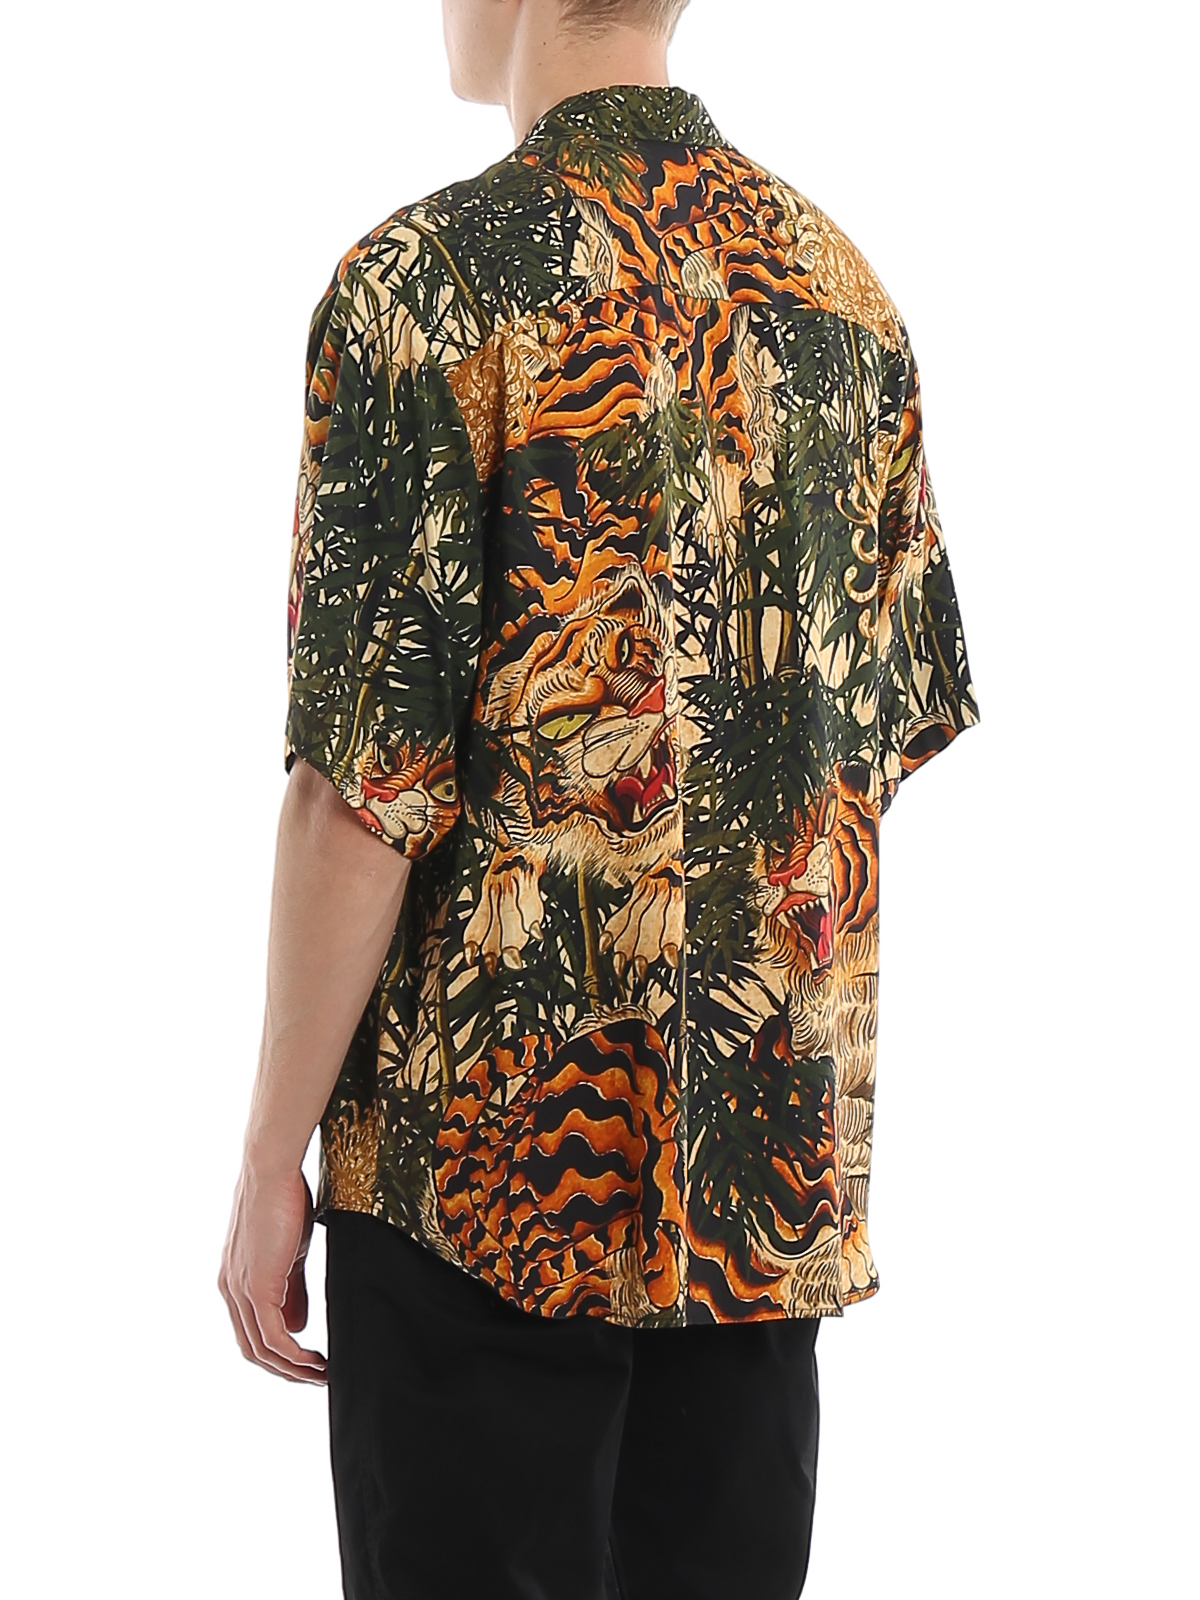 Mens Tiger Printed Viscose Shirt